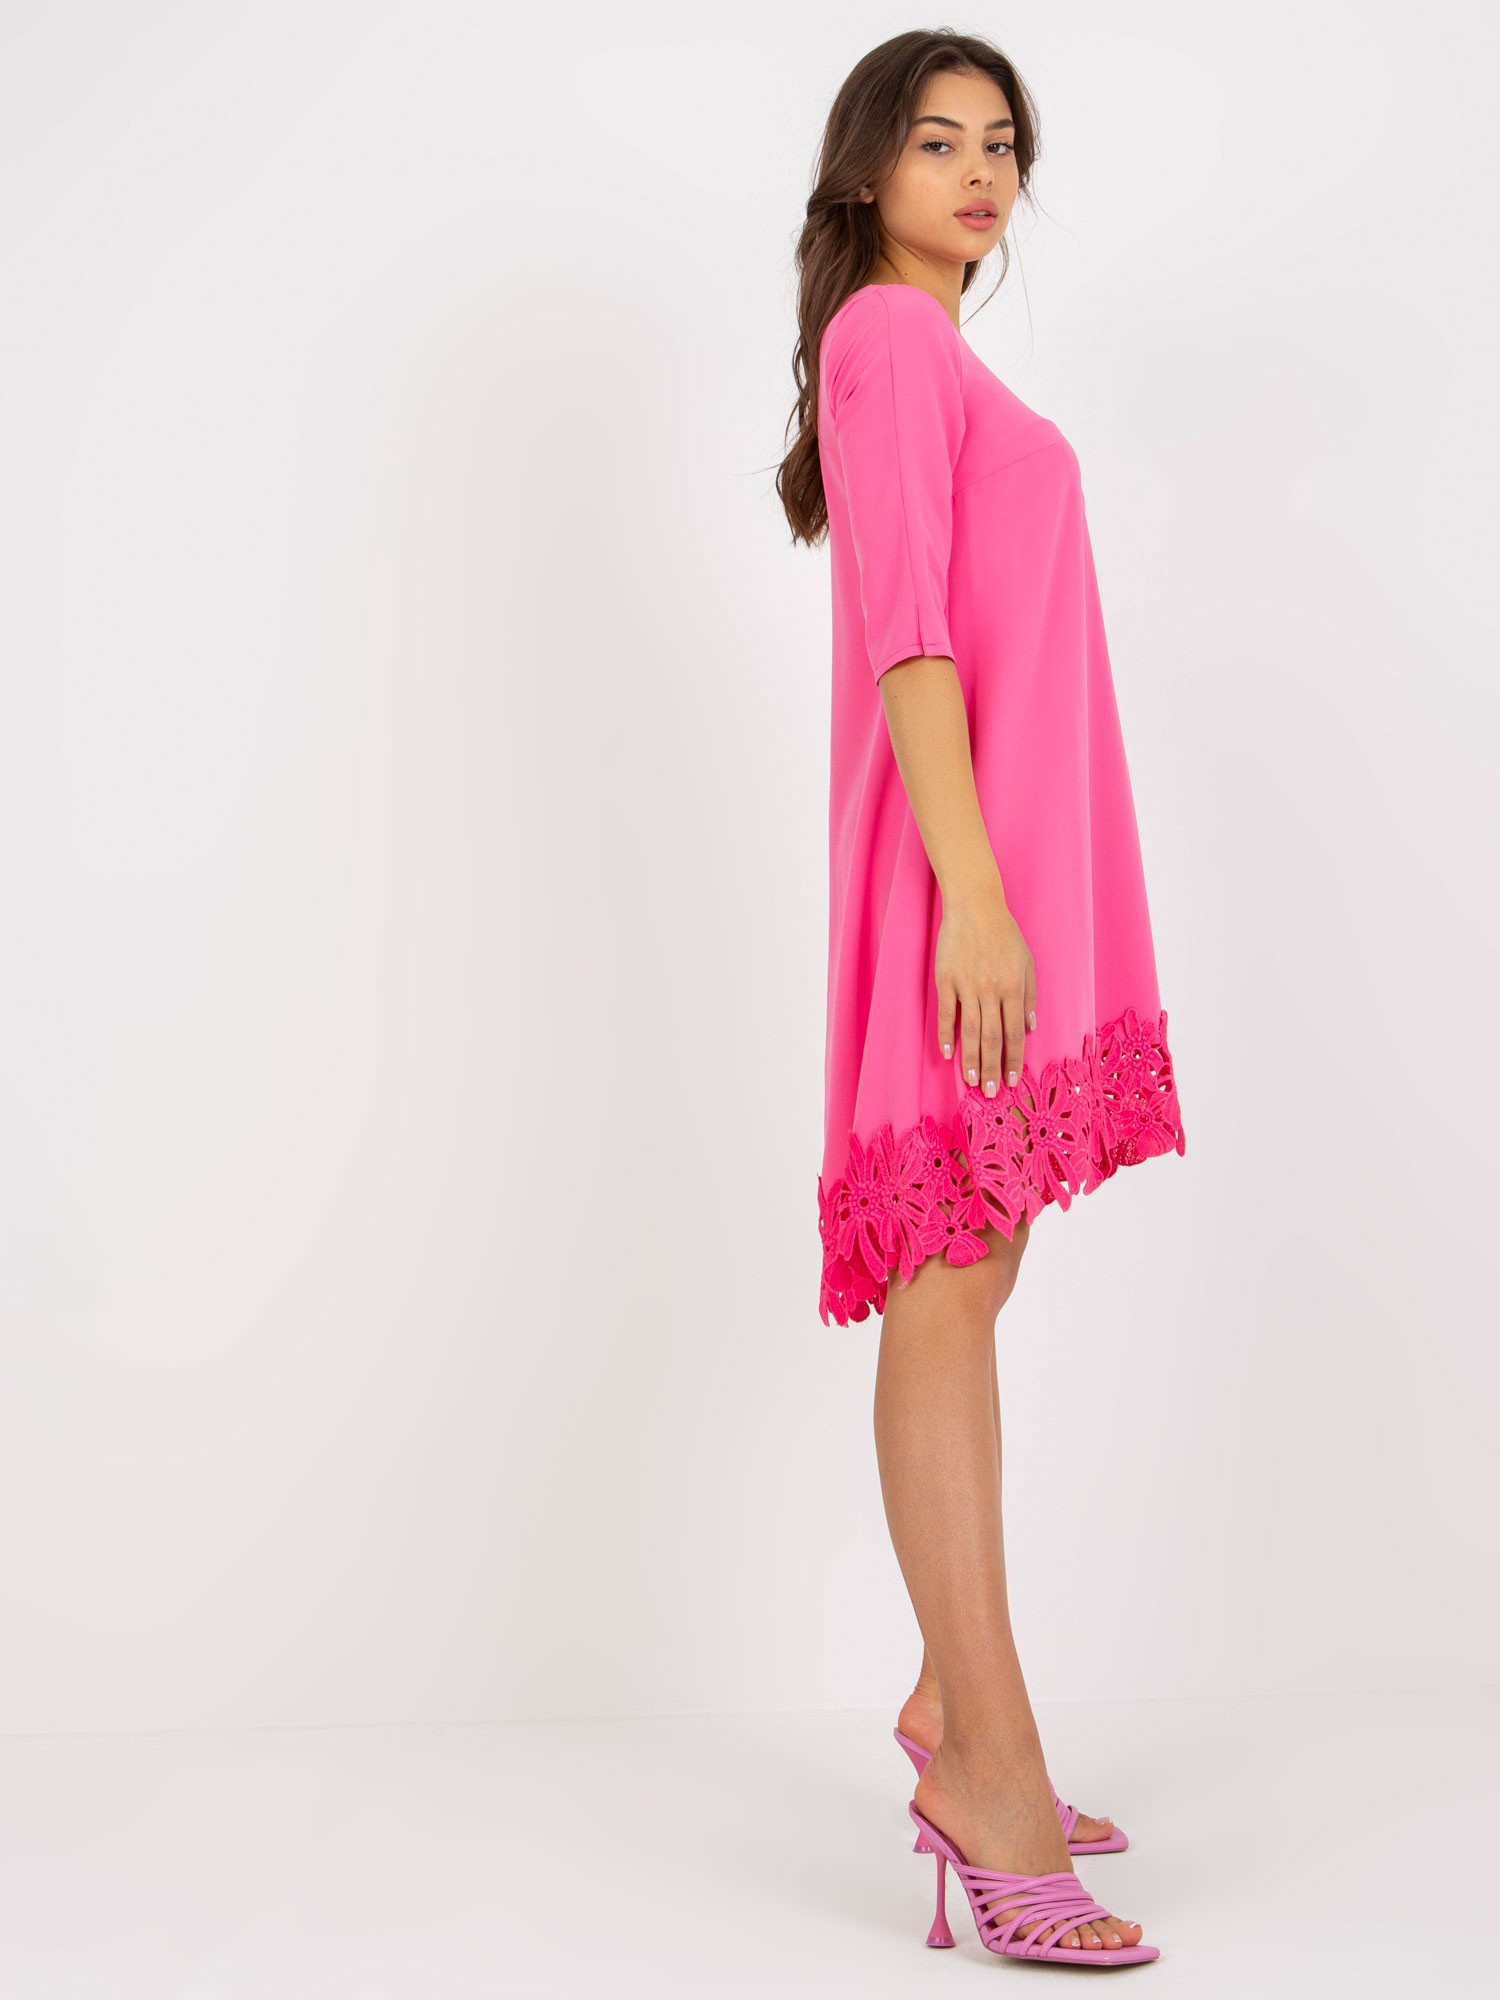 Dámské šaty LK SK model 17772557 růžové 36 - FPrice